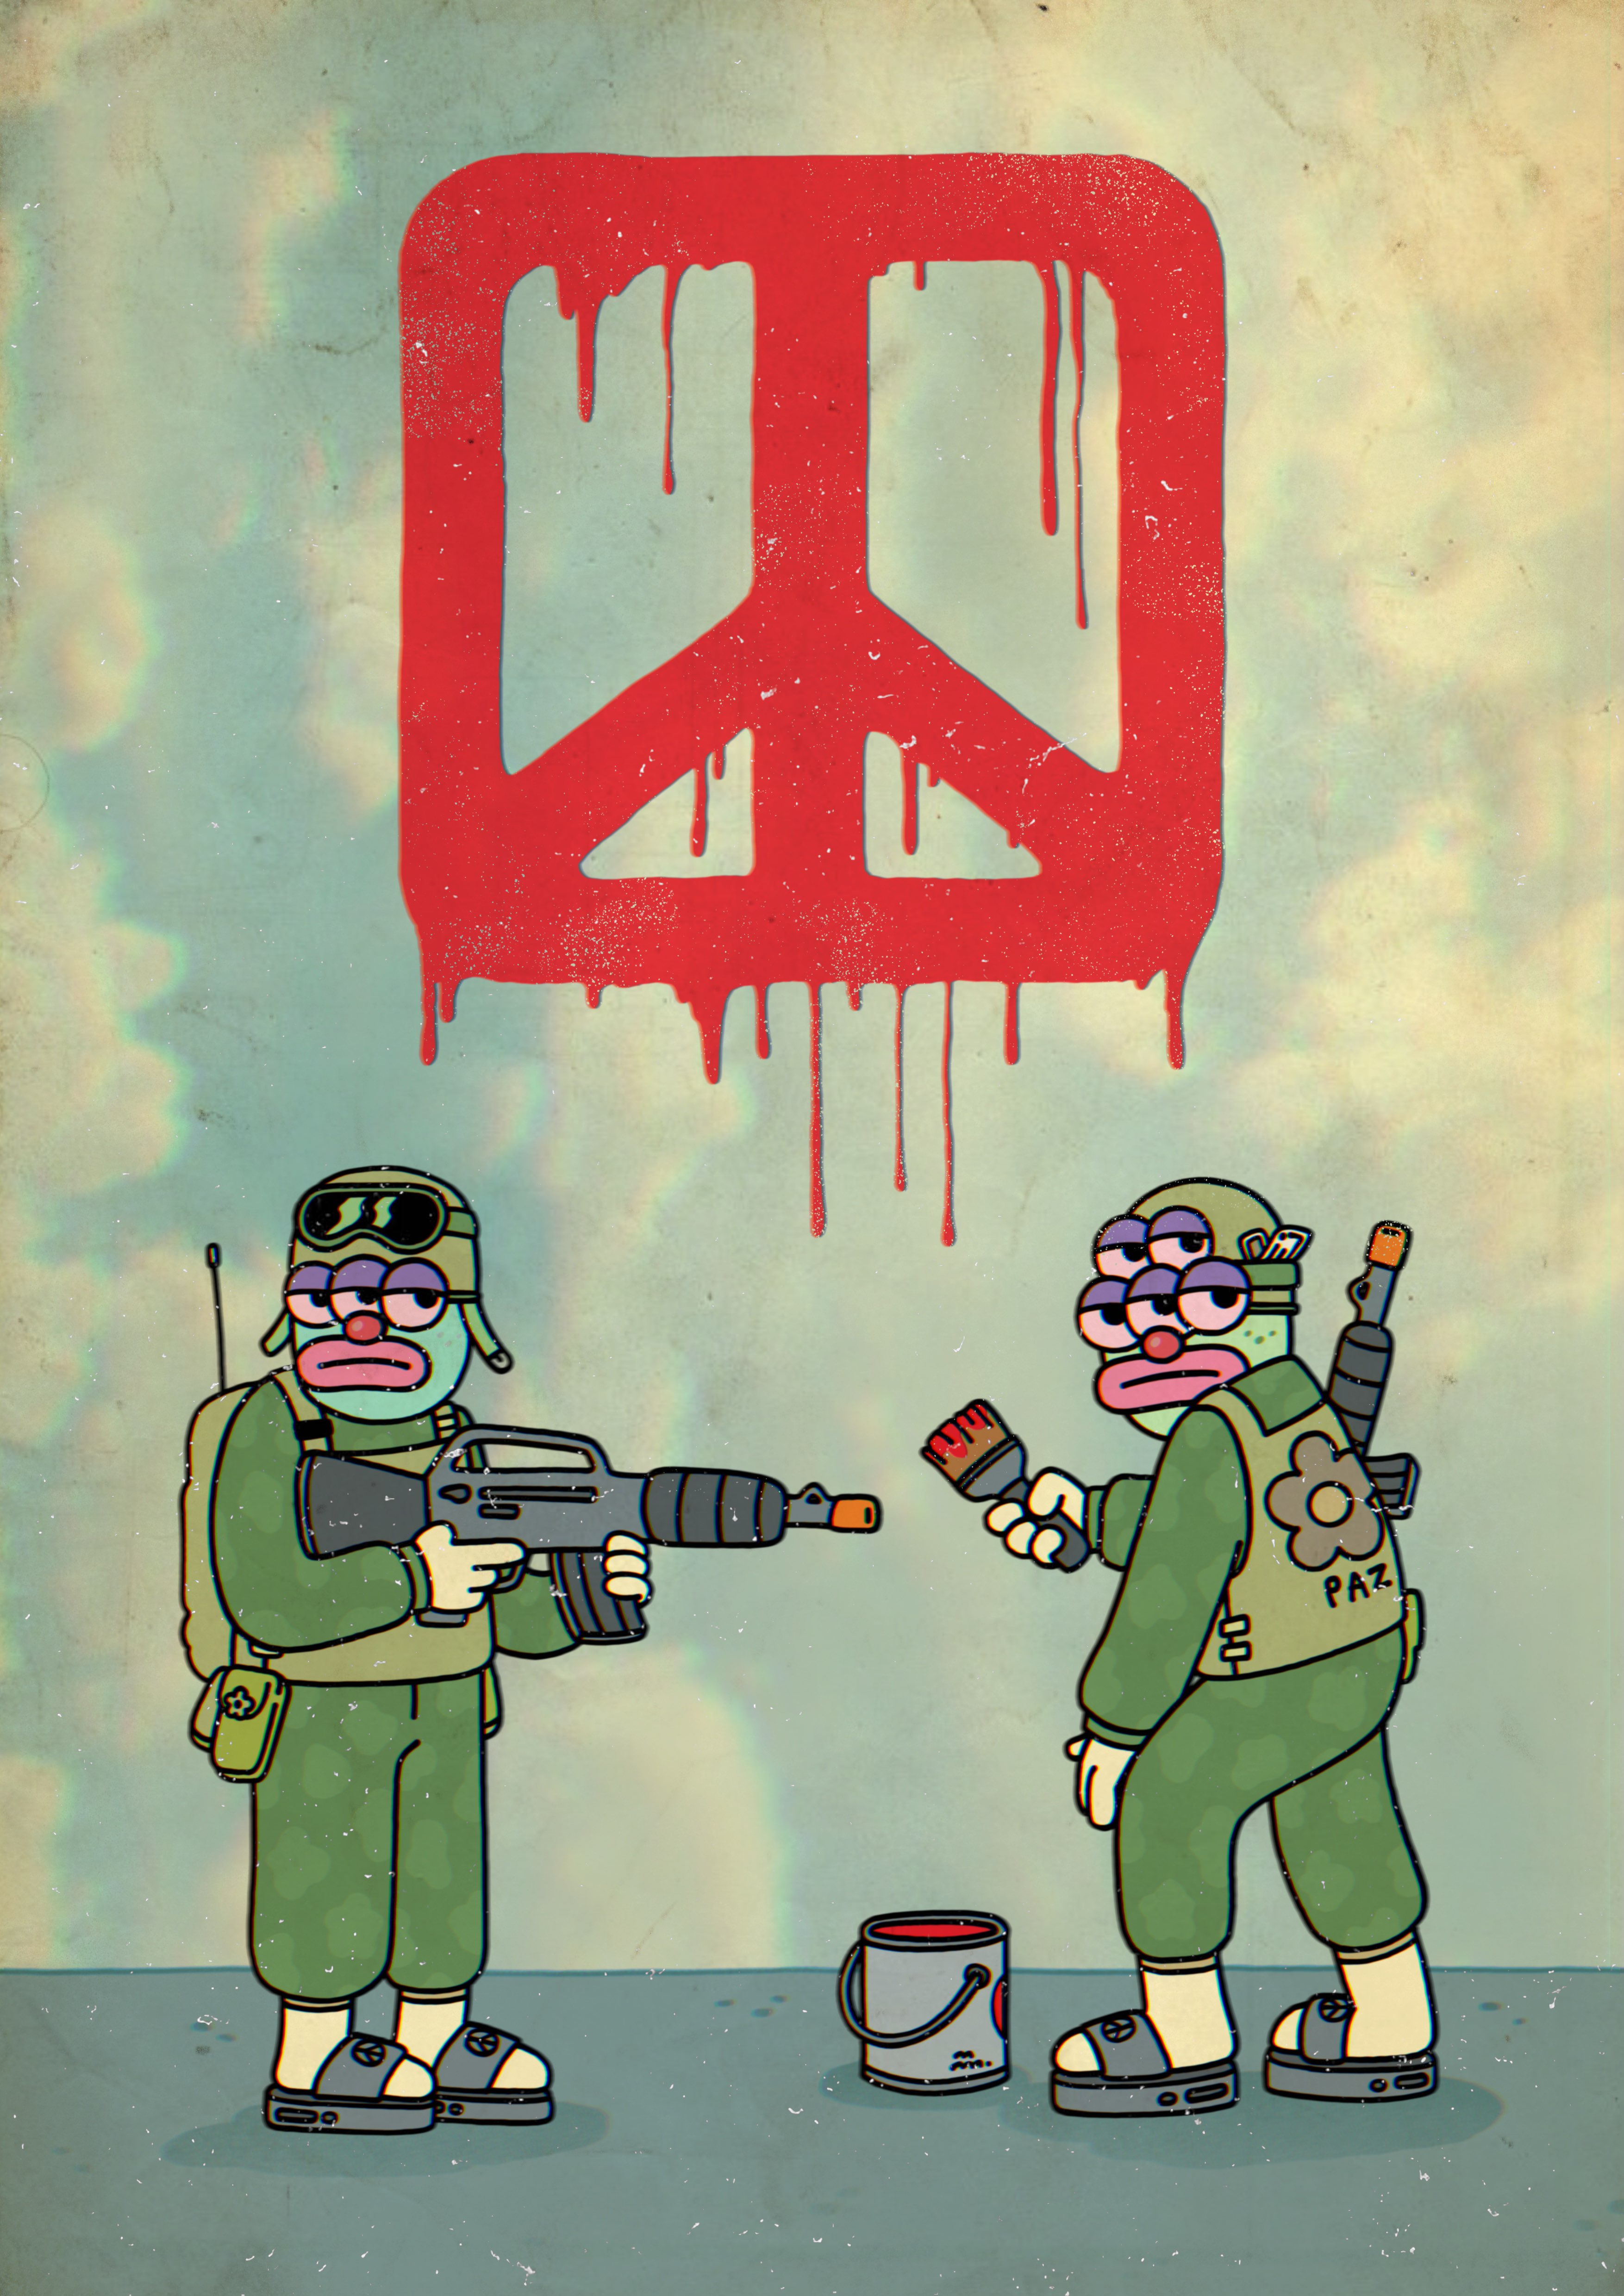 SHARE PEACE NOT WAR